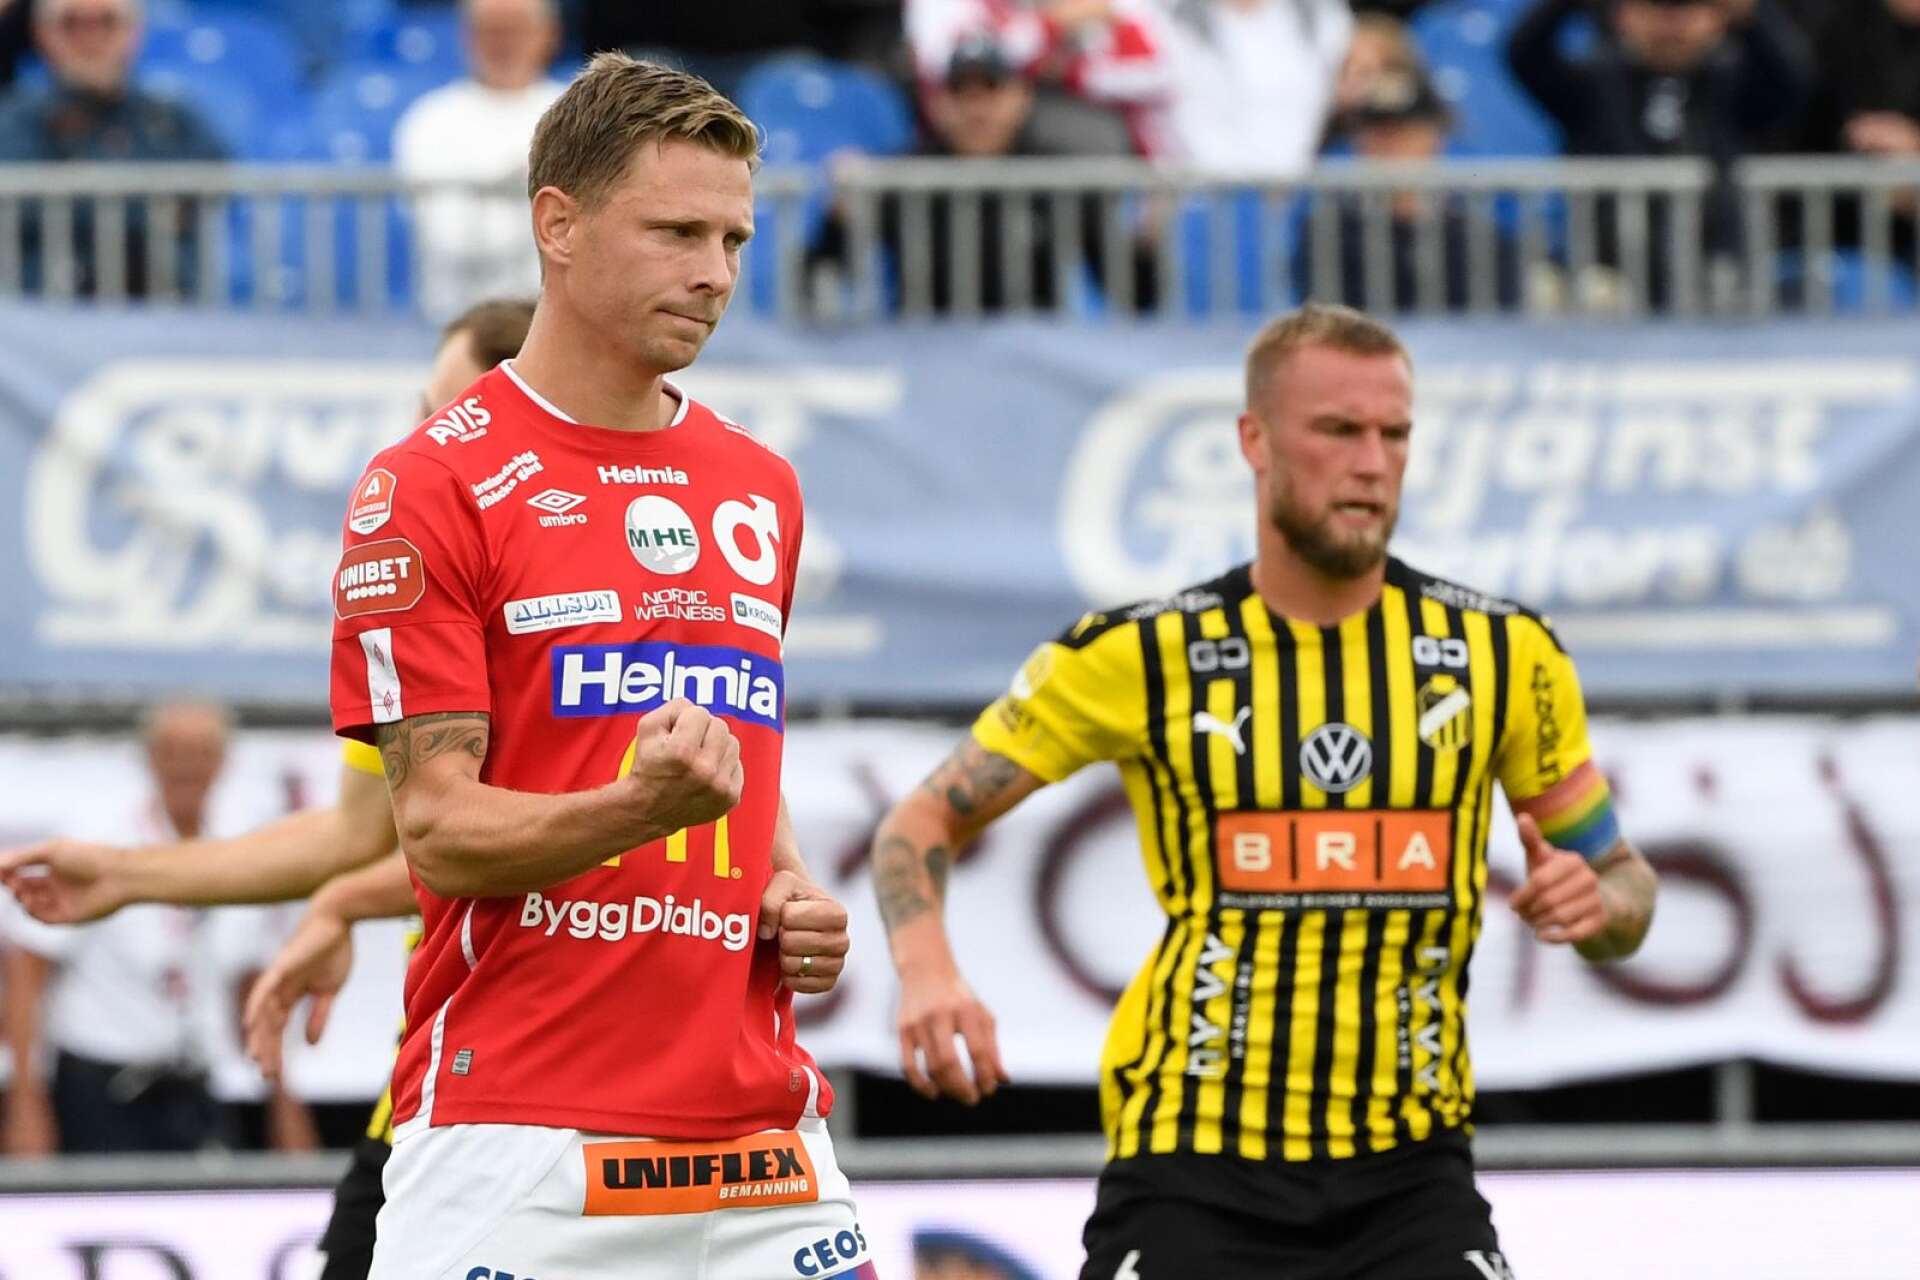 Efter 17 år Johan Bertilsson tillbaka i Karlstadsfotbollen. Under tisdagen presenterades han som nyförvärv av Karlstad Fotboll.